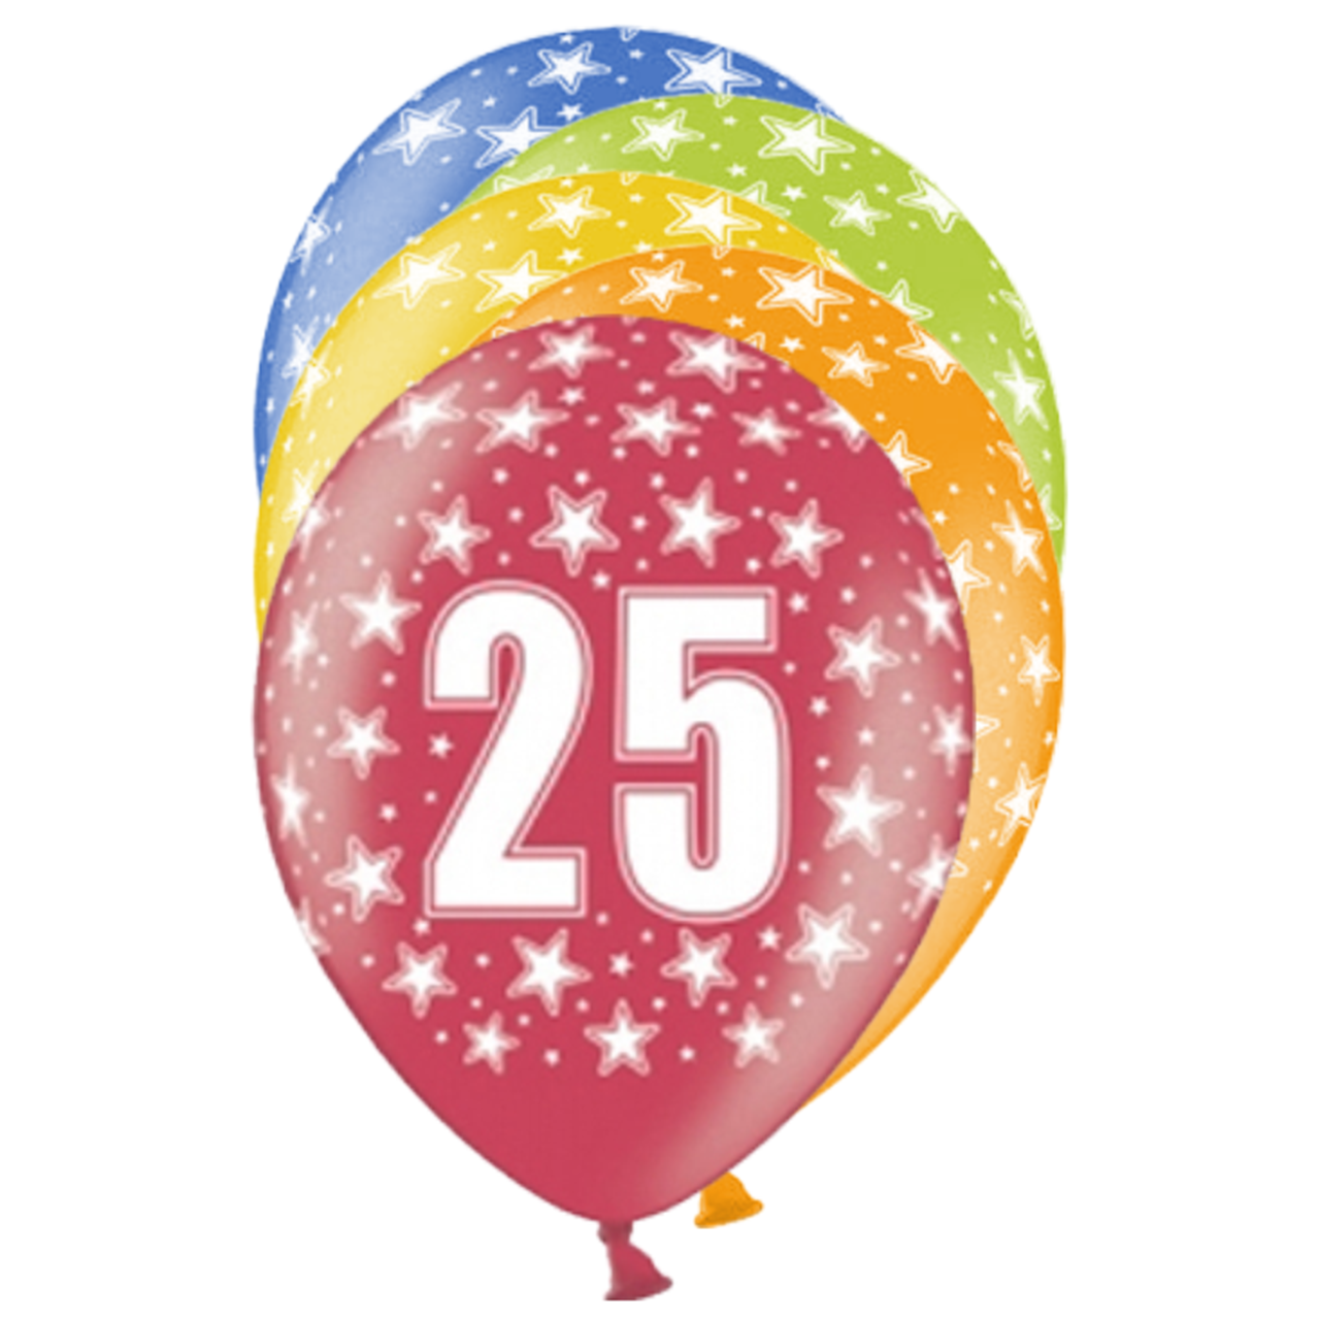 6 Motivballons - Ø 30cm - 25 Celebration